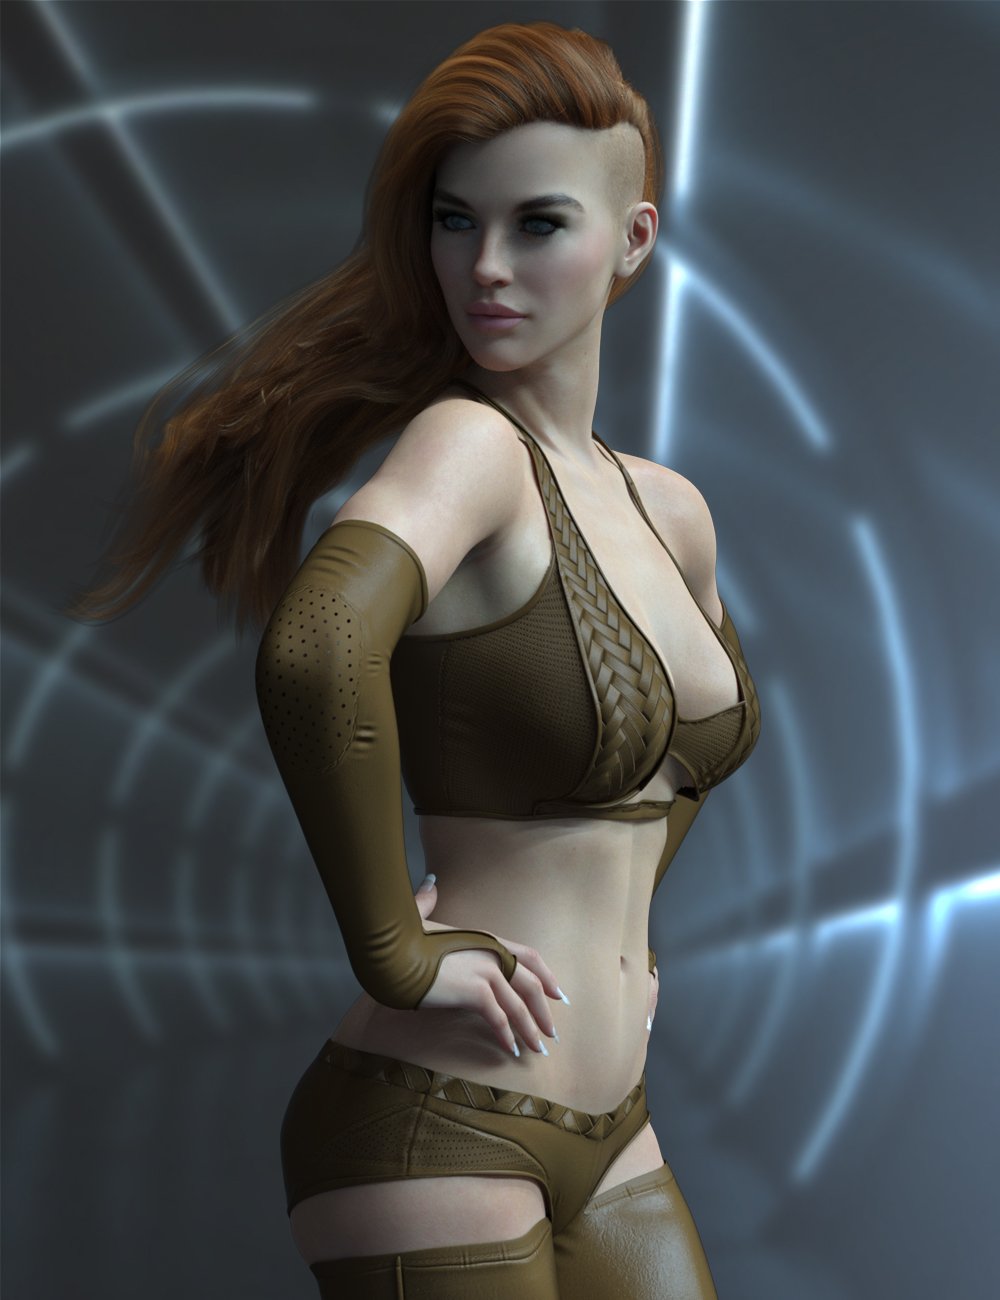 X-Fashion Exquisite Bodysuit Set for Genesis 8.1 Females by: xtrart-3d, 3D Models by Daz 3D